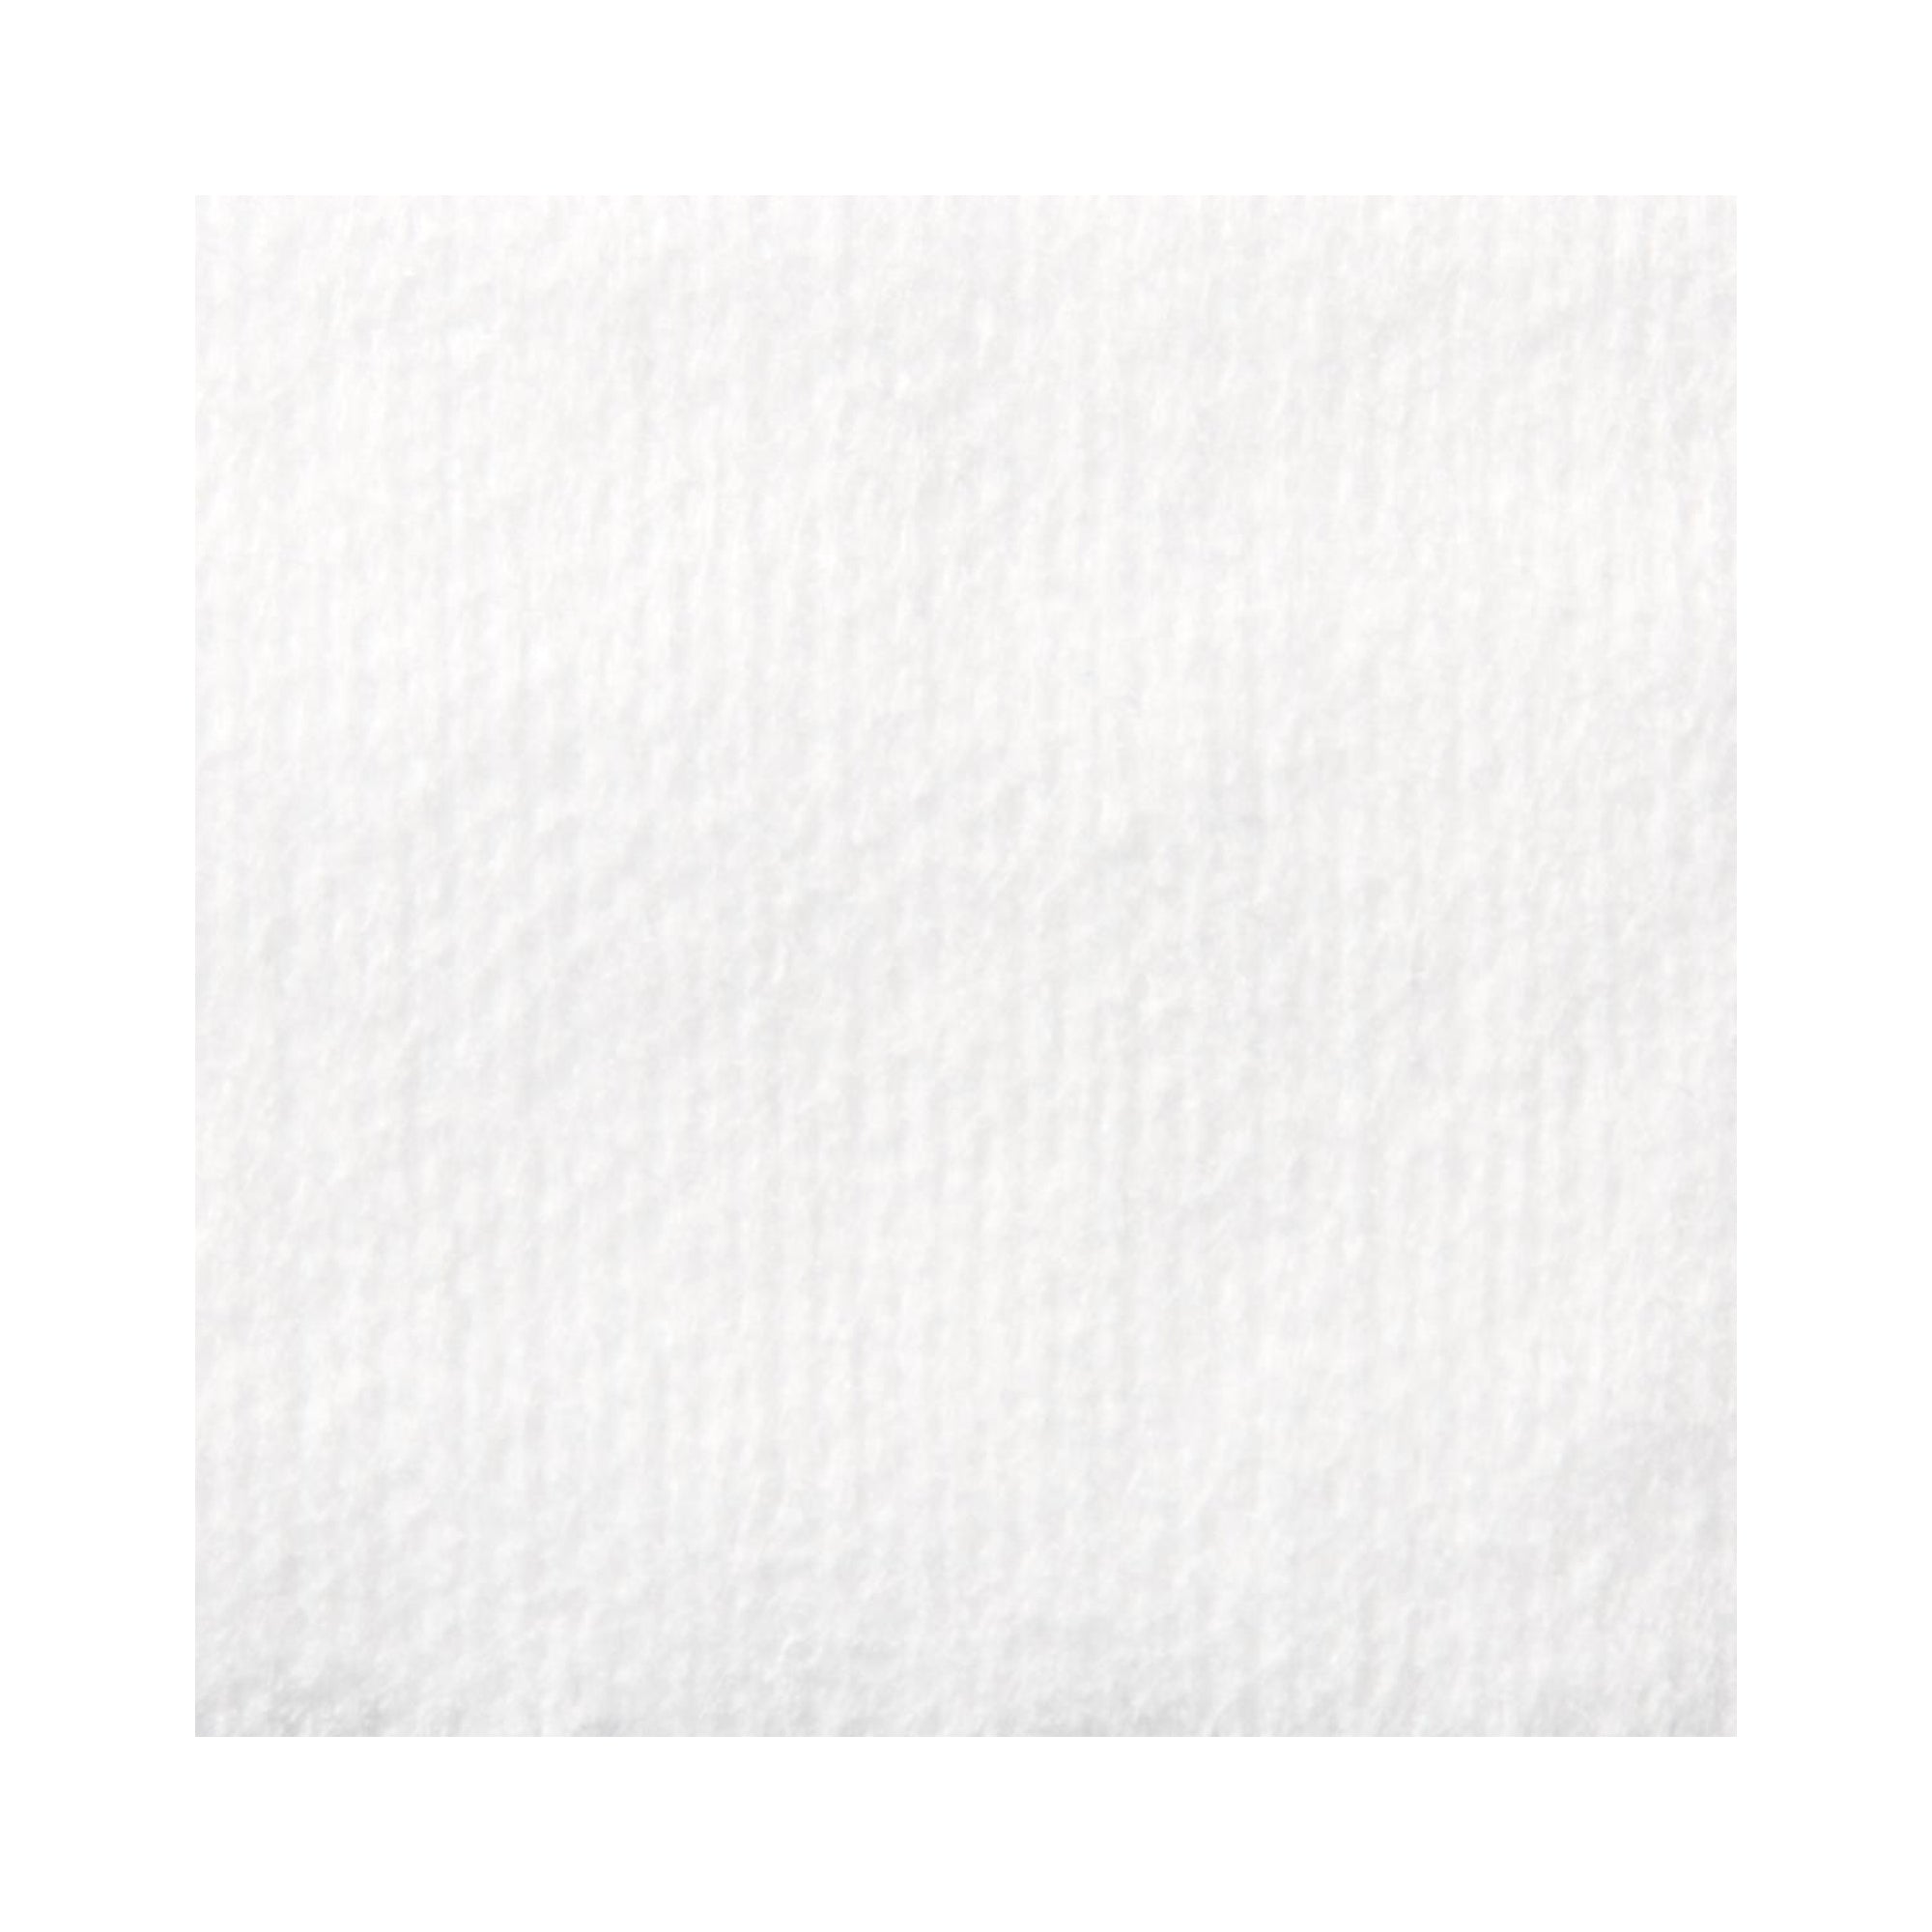 Medline Avant Gauze® Nonwoven Sponge - 2 x 2 Inch, 4-Ply, White, 200 per Pack (40BG/CS)